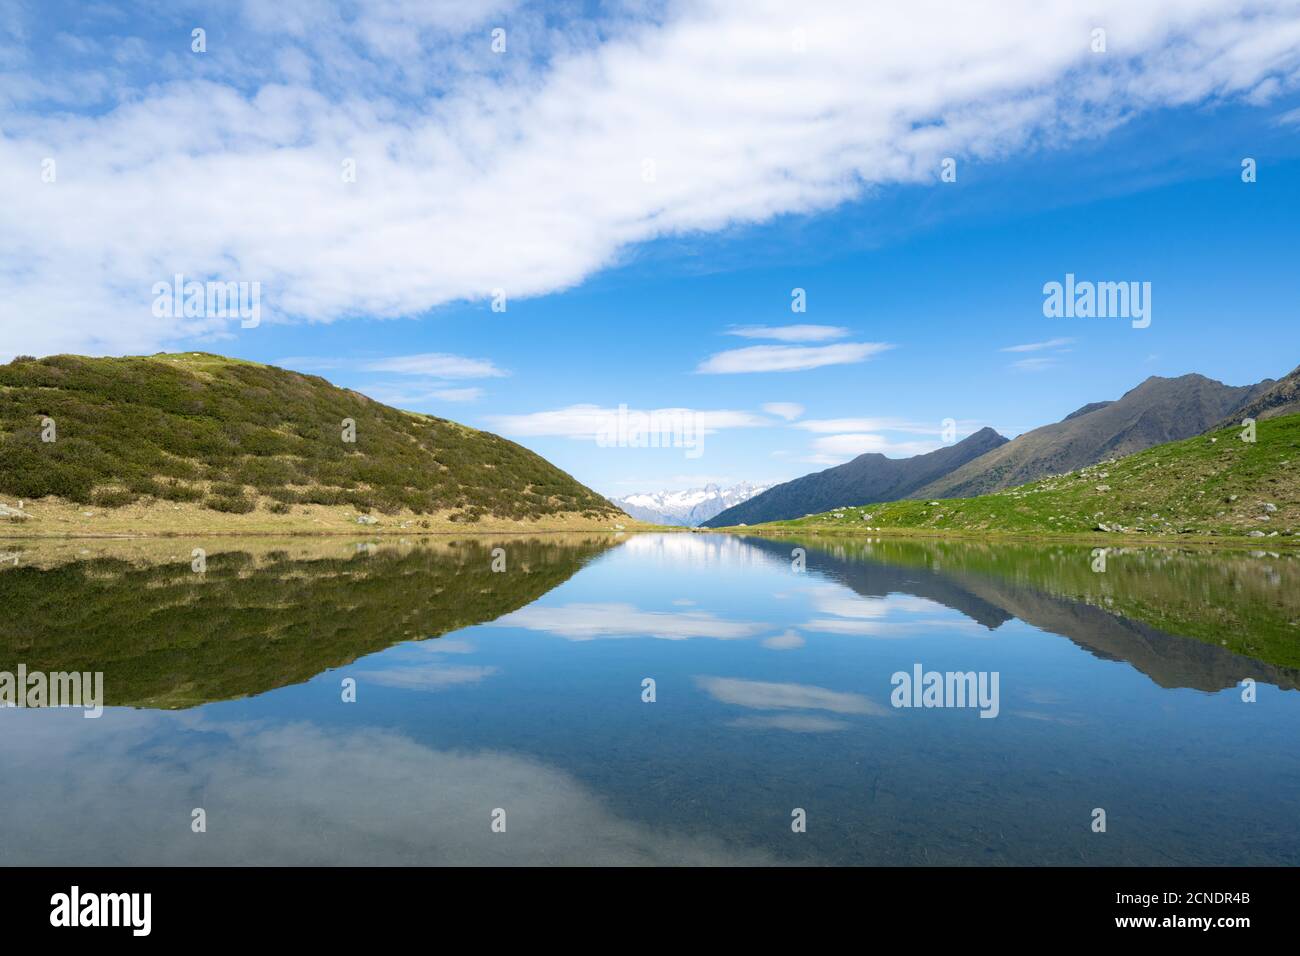 Le montagne si riflettono nelle acque blu dei laghi di Porcile, della Valle di Tartano, della Valtellina, della provincia di Sondrio, della Lombardia, dell'Italia, dell'Europa Foto Stock